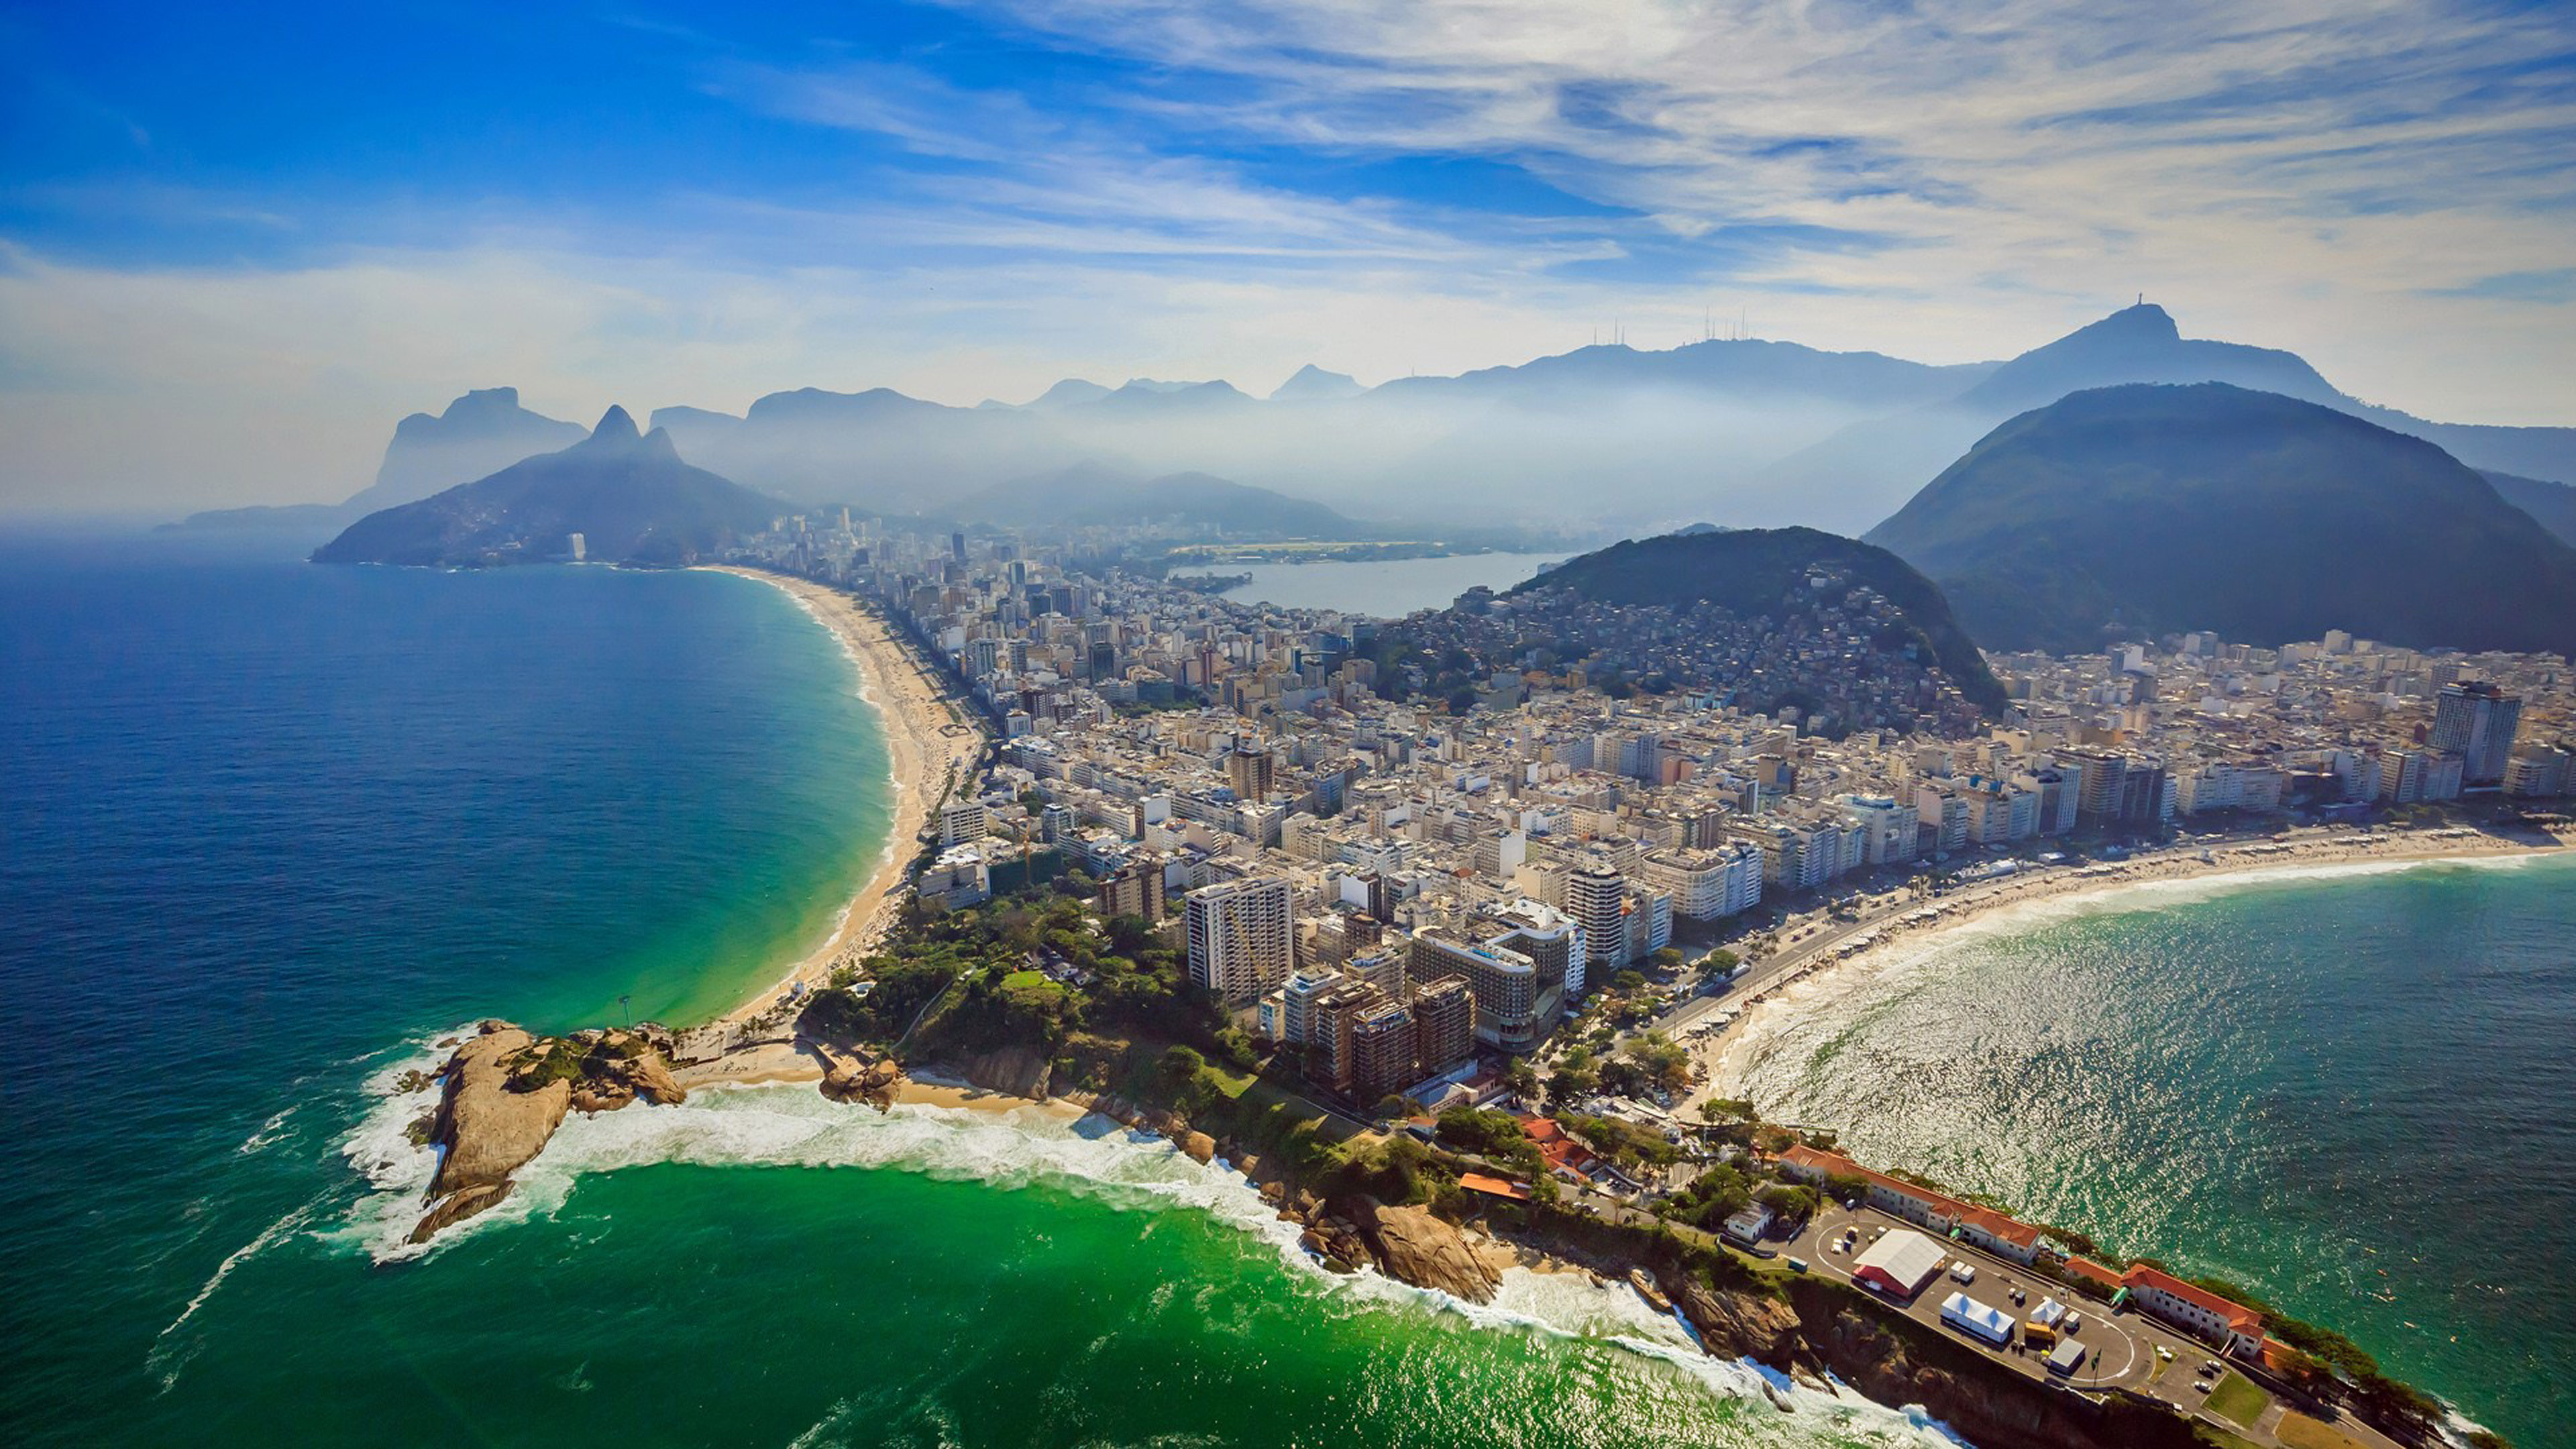 Rio De Janeiro Copacabana Beach And Ipanema Beach Aerial View Ultra HD 4k Wallpaper For Desktop & Mobiles 3840x2160, Wallpaper13.com